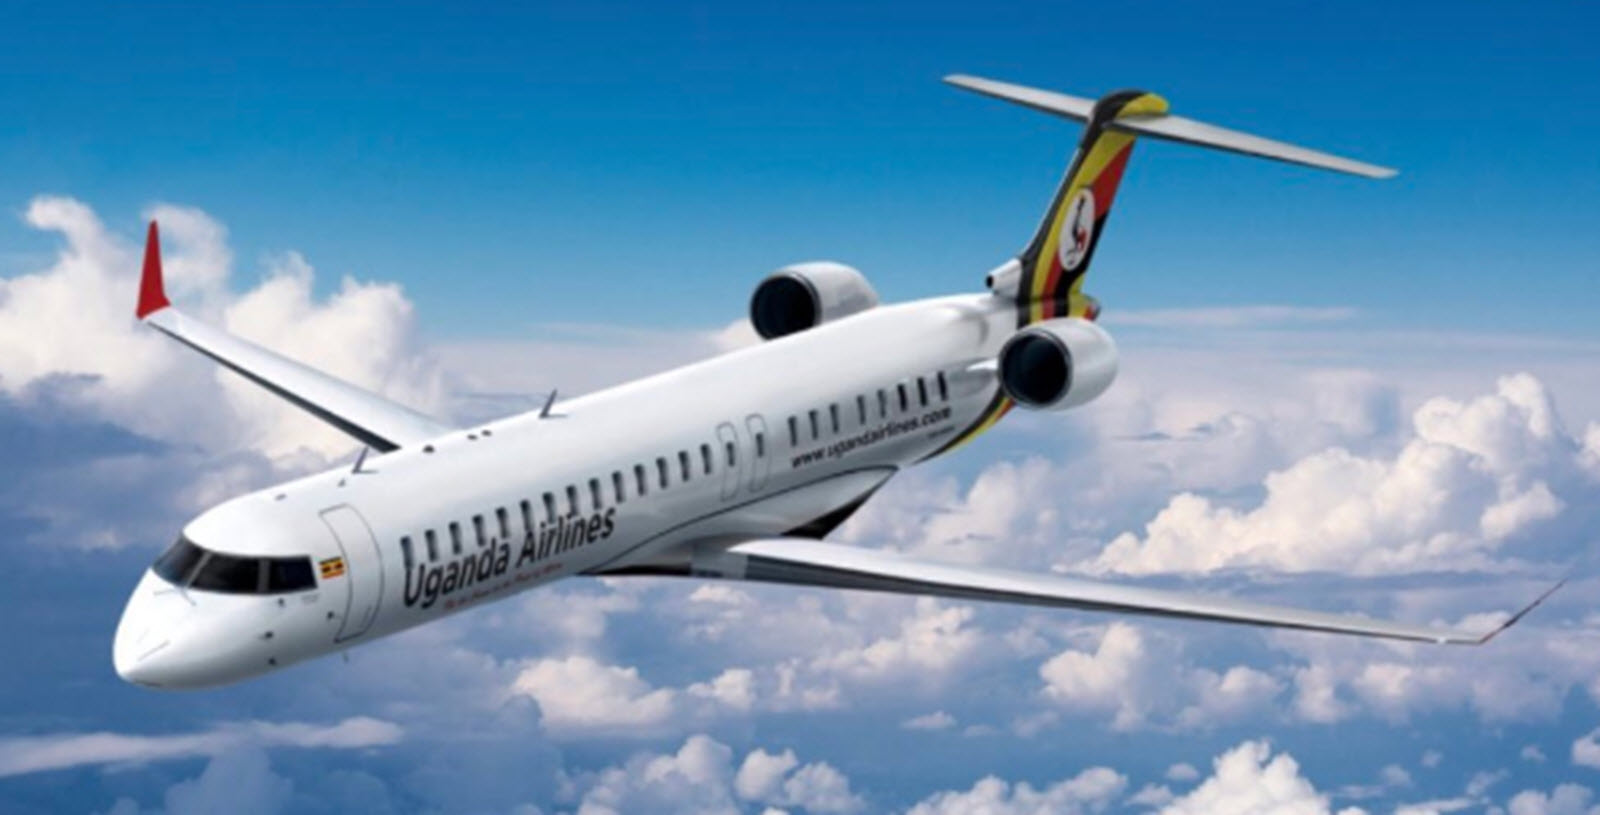 Uganda airlines plane